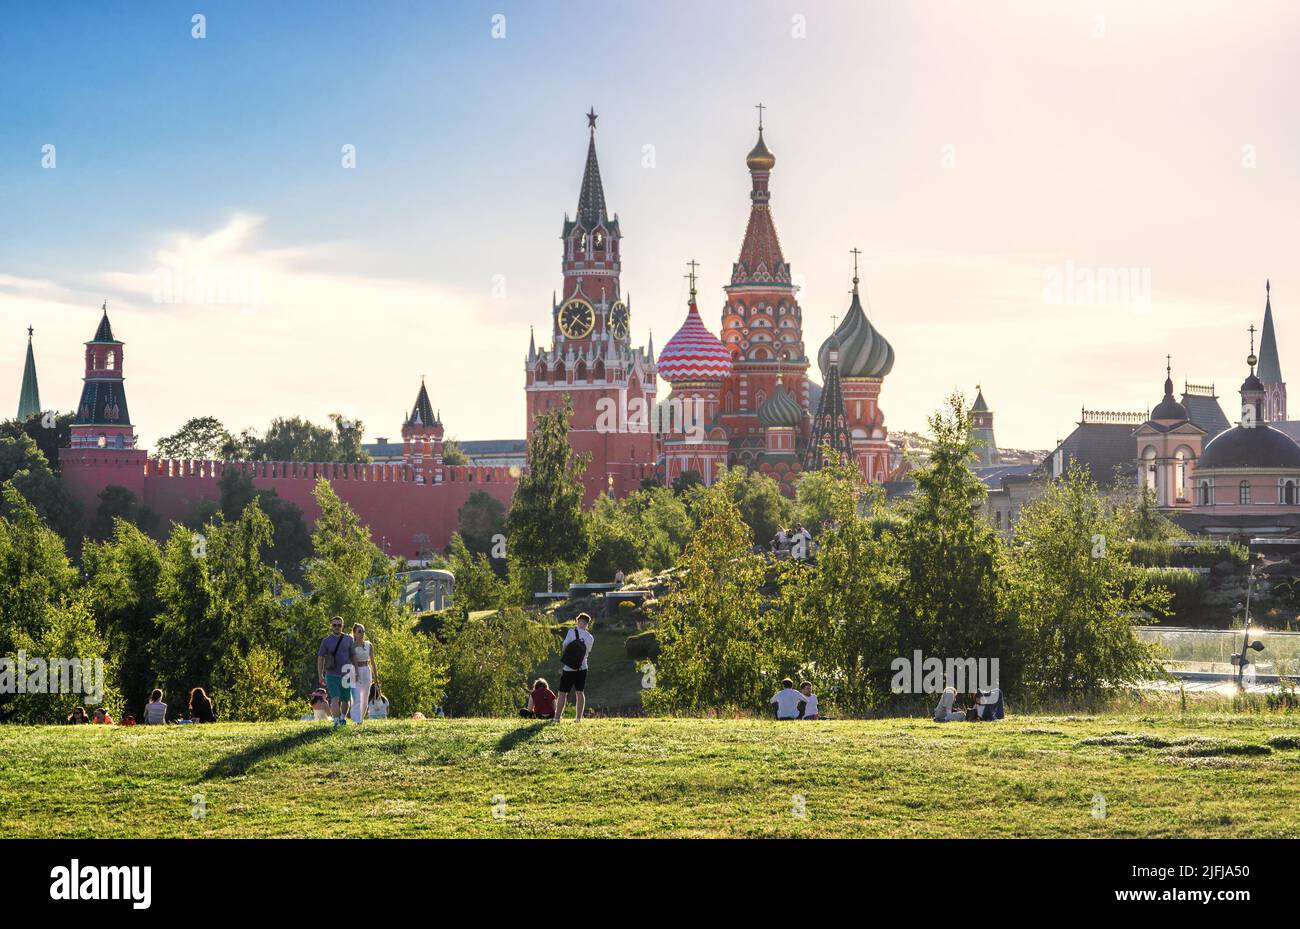 Moscú - Jun 28, 2022: La gente descansa en el Parque Zaryadye en Moscú, Rusia. Este bonito parque es una atracción turística de Moscú. Vista panorámica de la Catedral de San Basilio Foto de stock